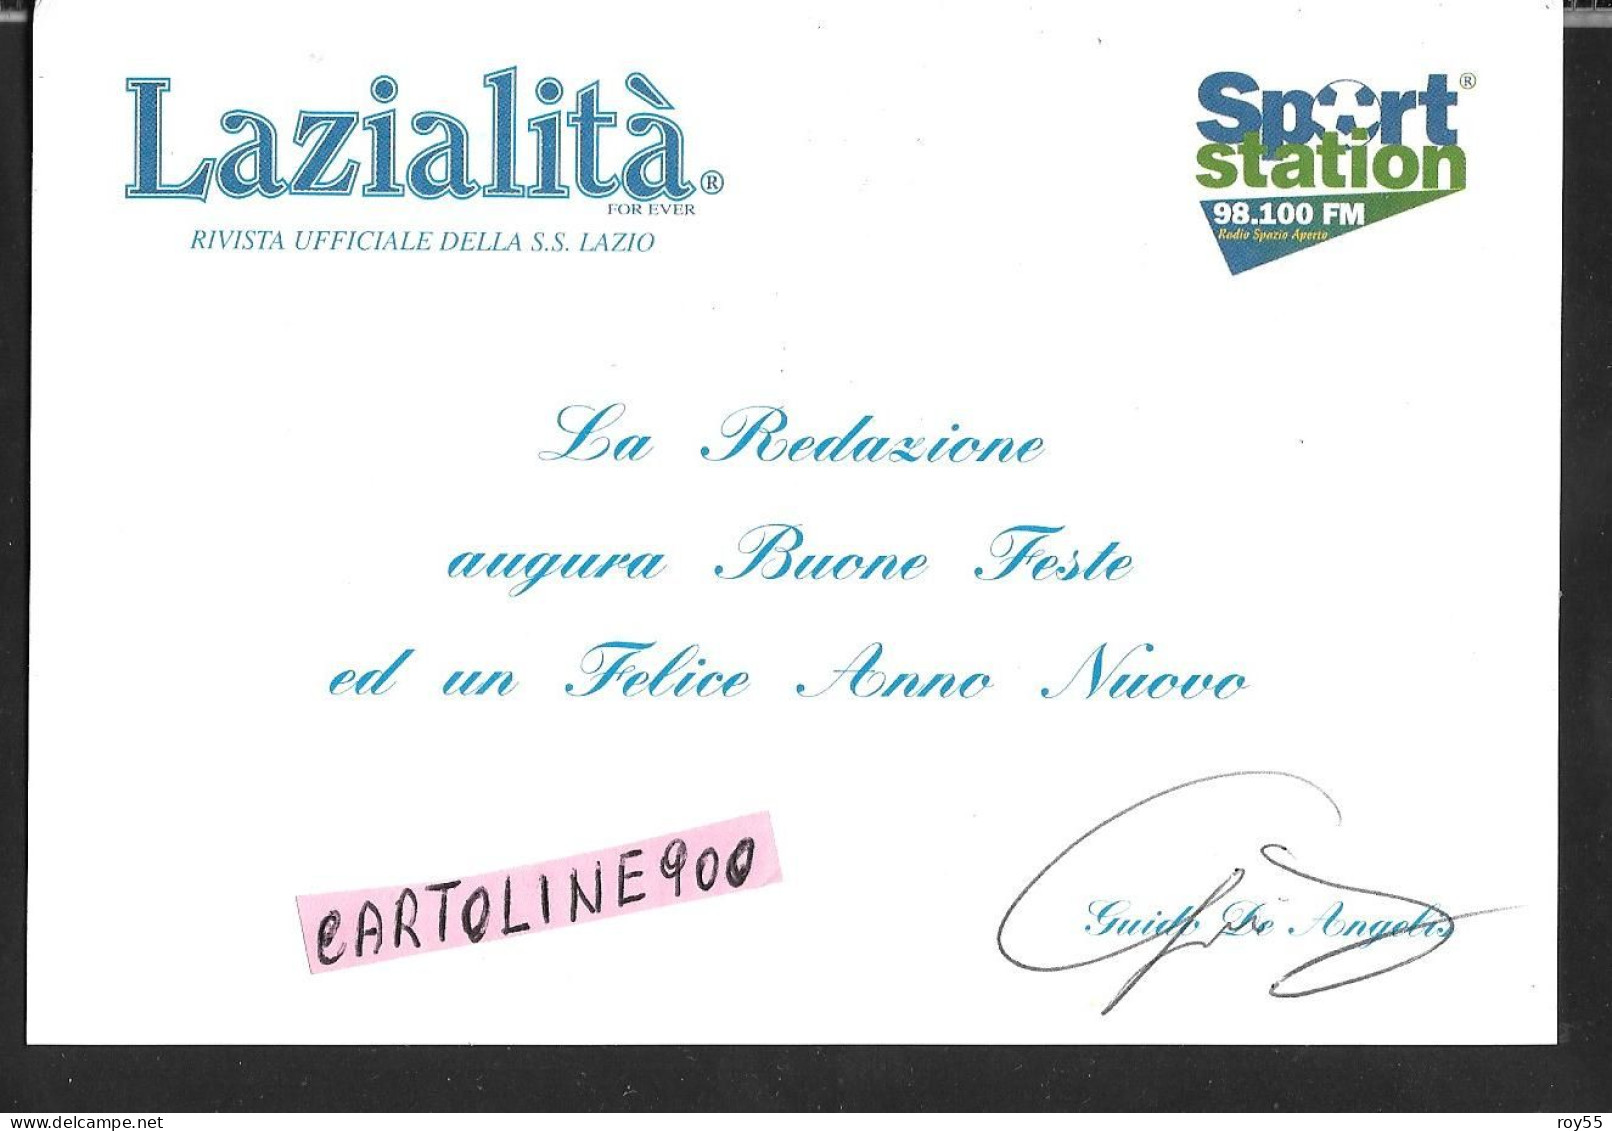 Sport Calcio Lazialita For Ever Rivista Ufficiale Ss Lazio Calcio 1900 Sport Station 98.100 Fm Di Guido De Angelis - Calcio